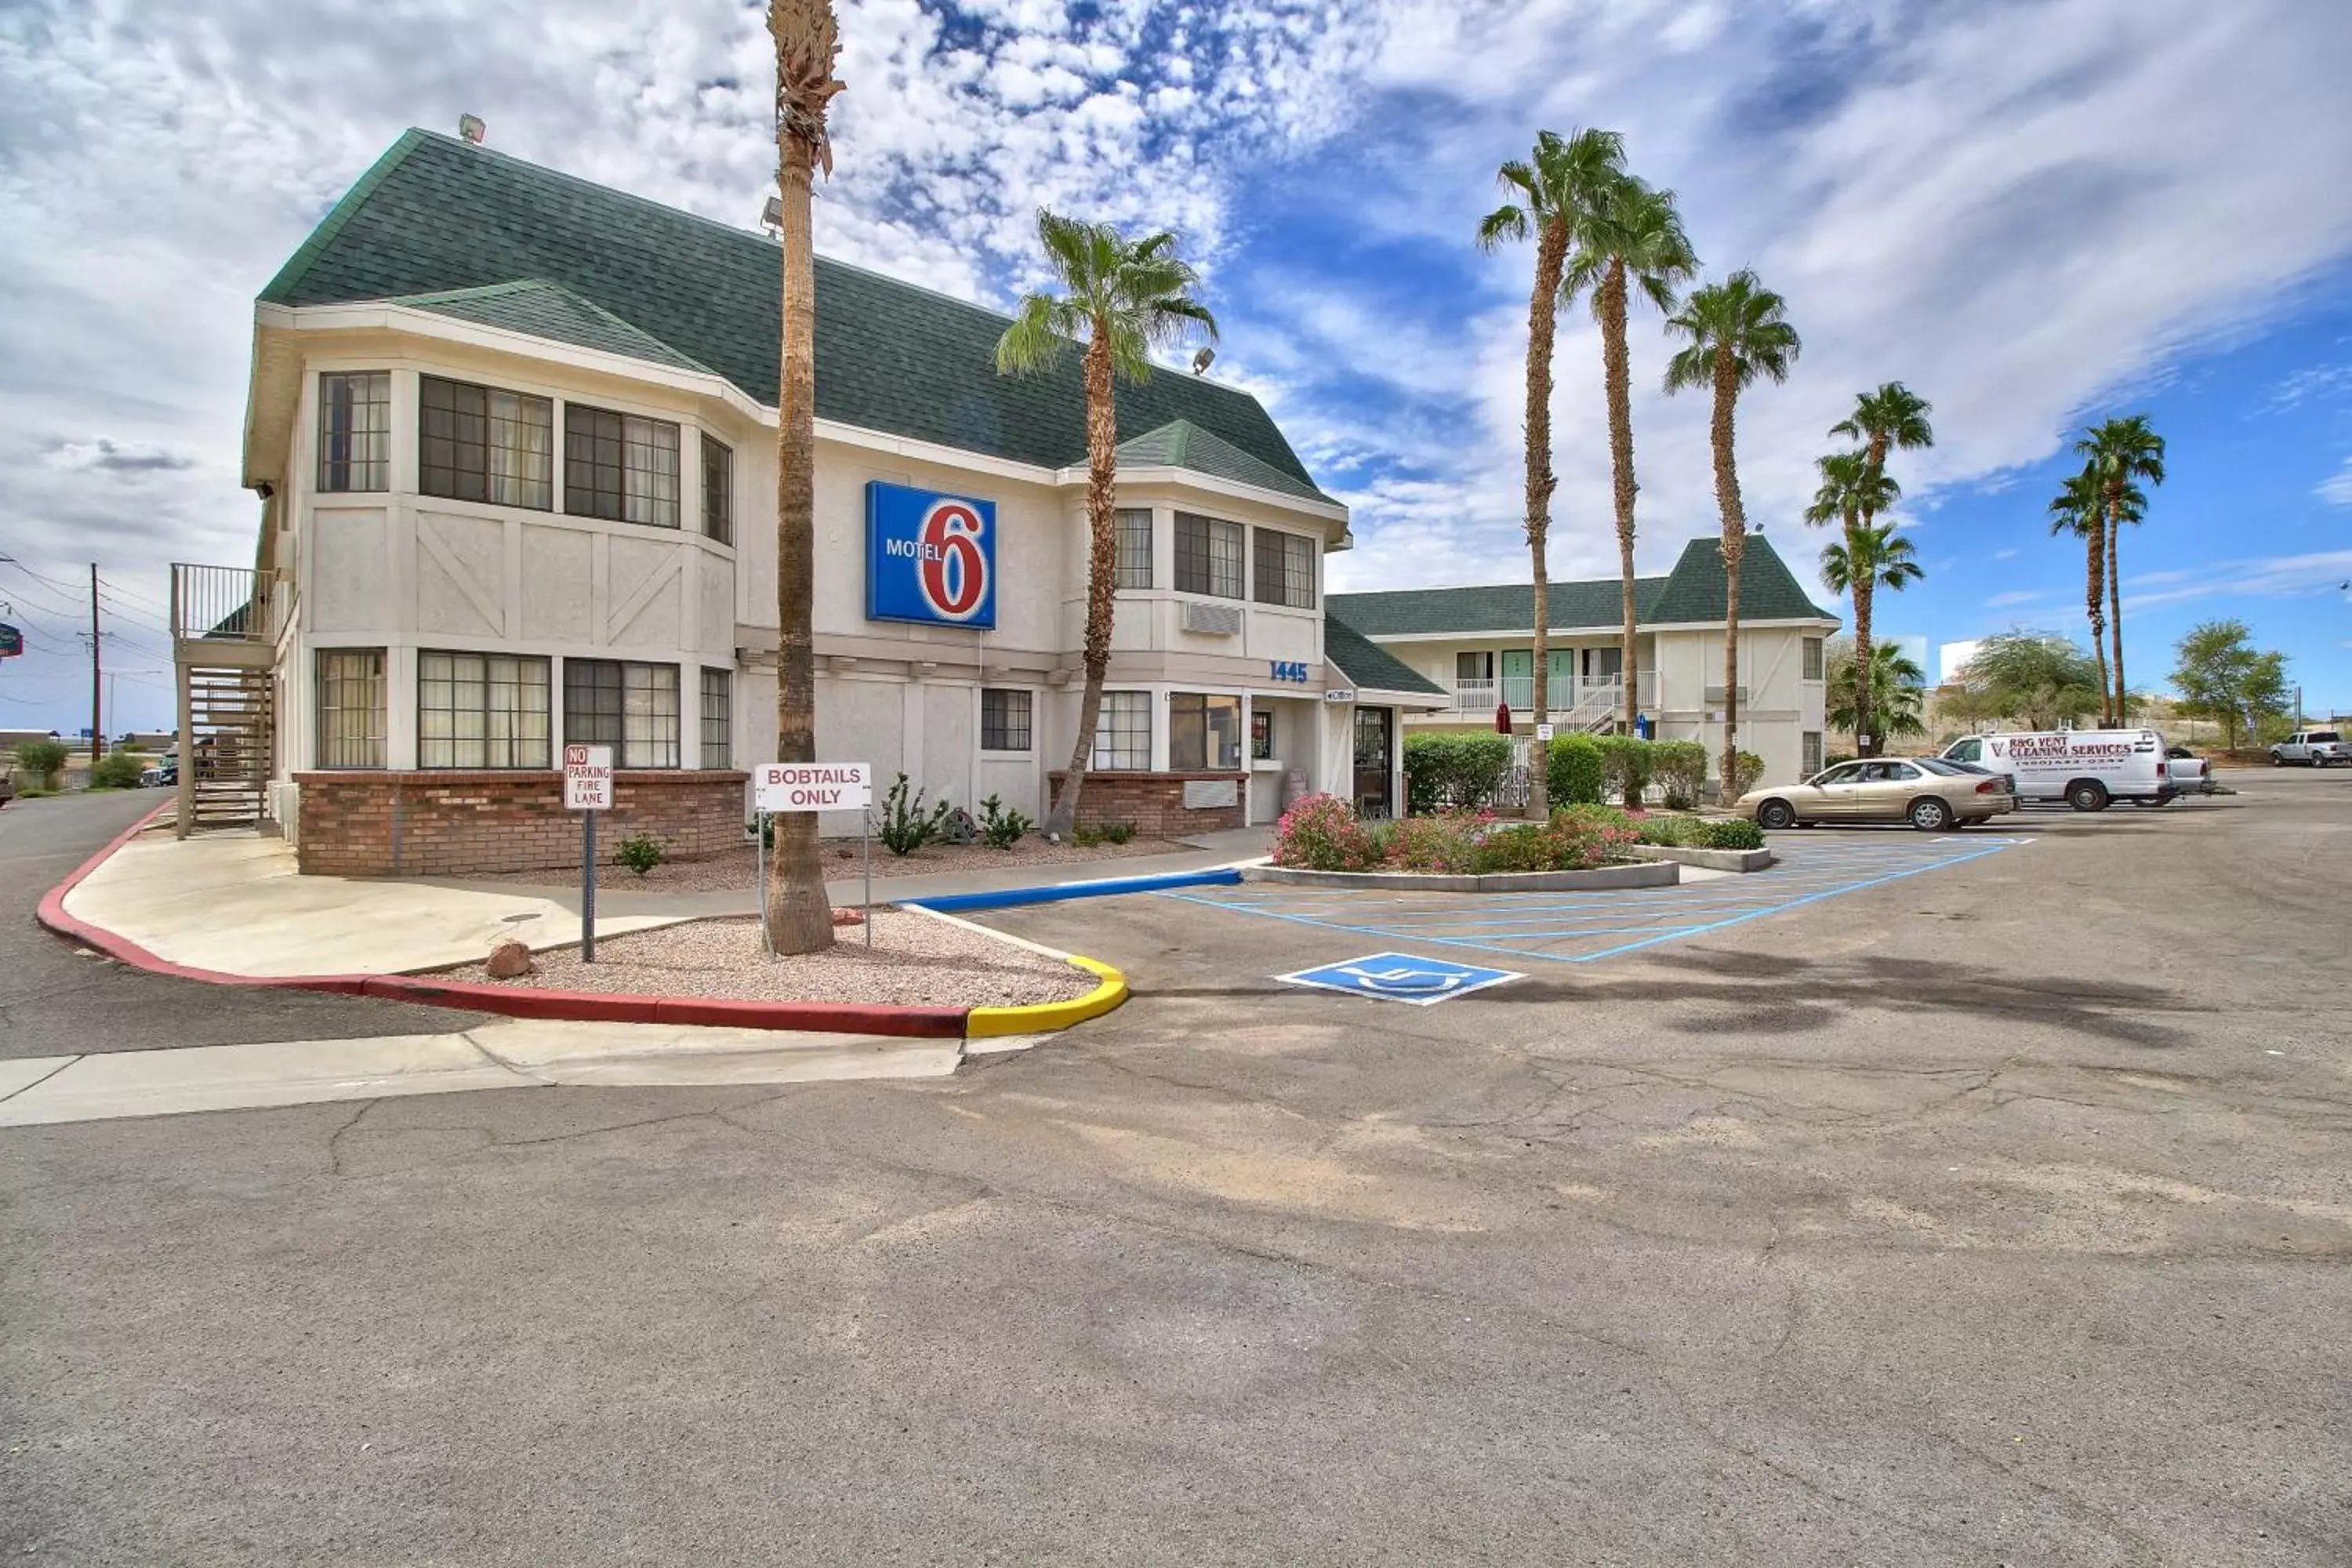 Property Building in Motel 6-Yuma, AZ - East